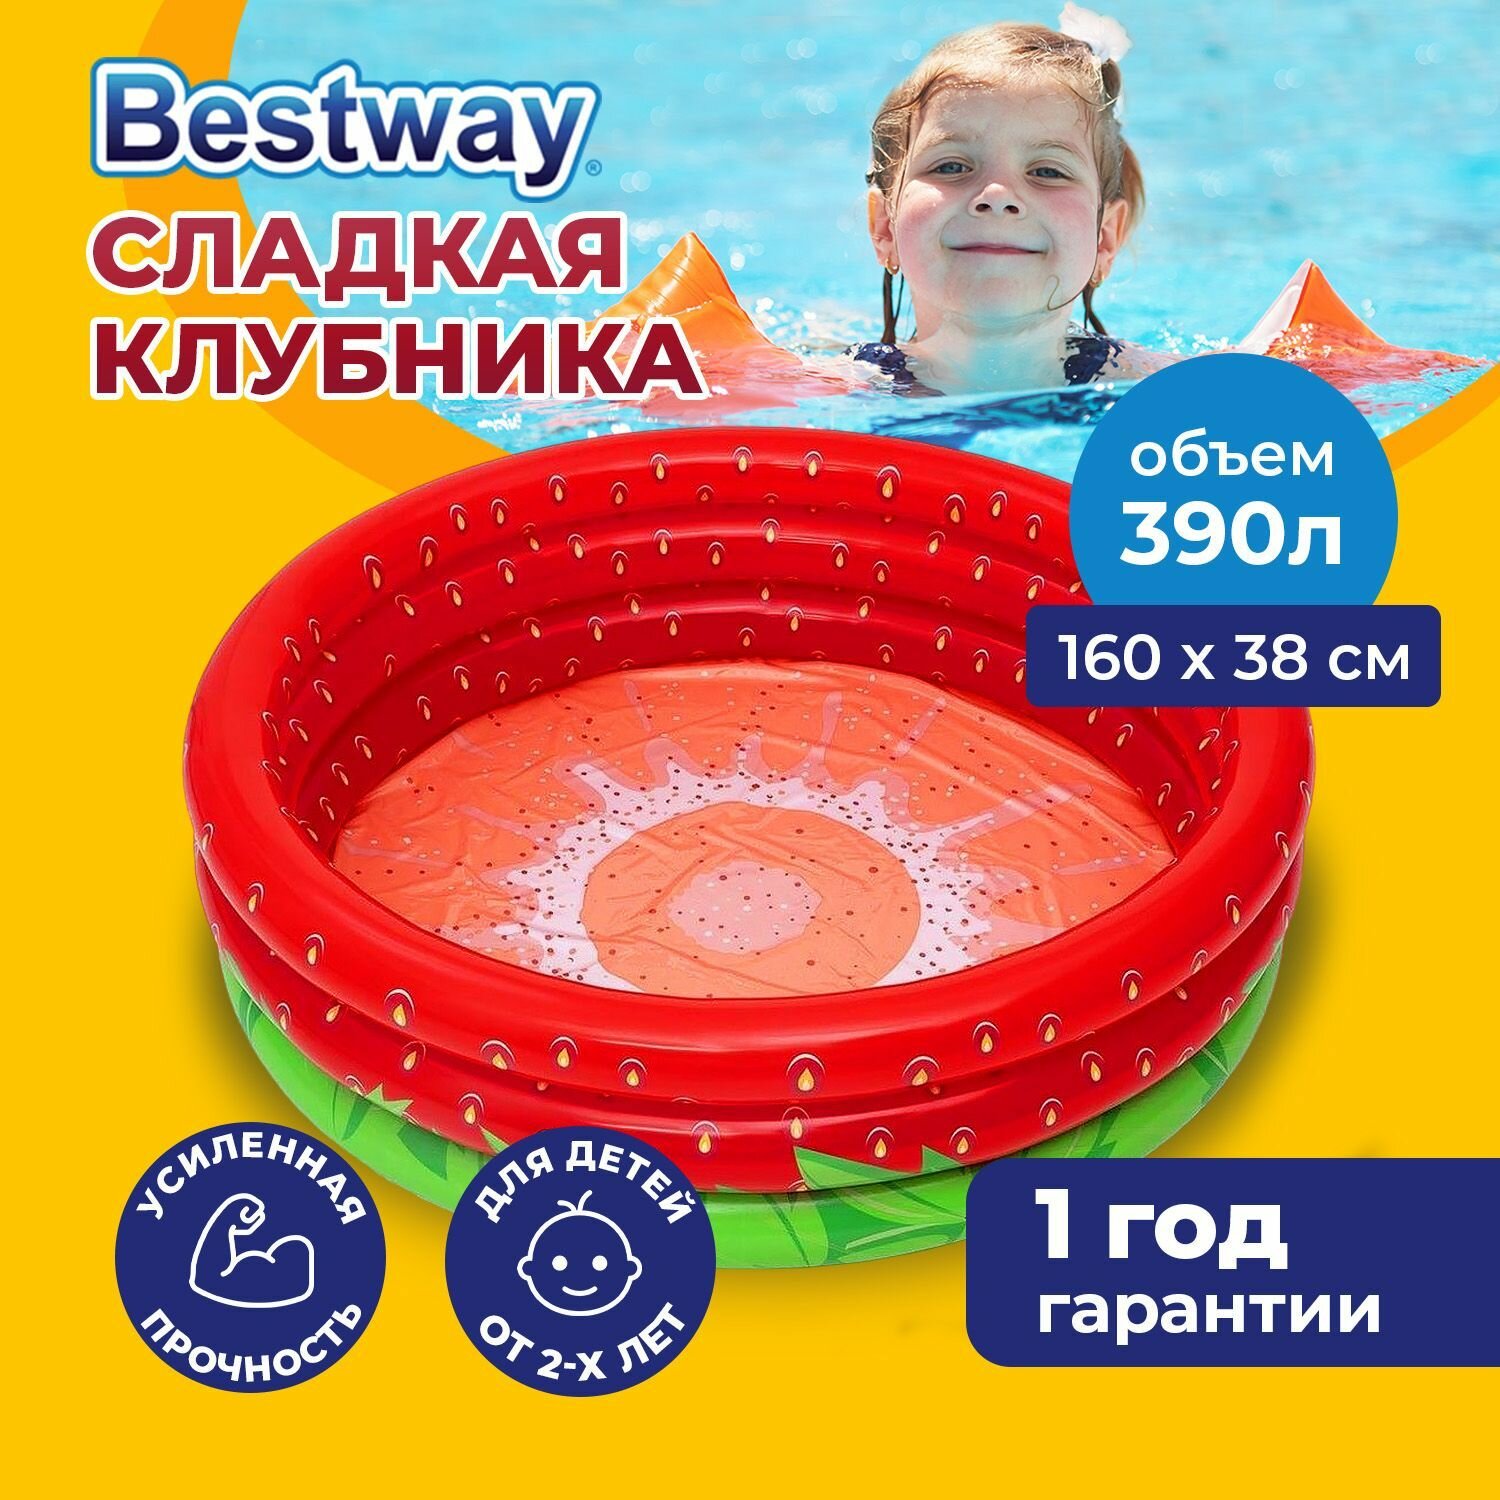 Бассейн надувной детский Bestway "Сладкая клубника", круглый, игровой, для дачи, малышей, 390 л, 160х38 см, разноцветный